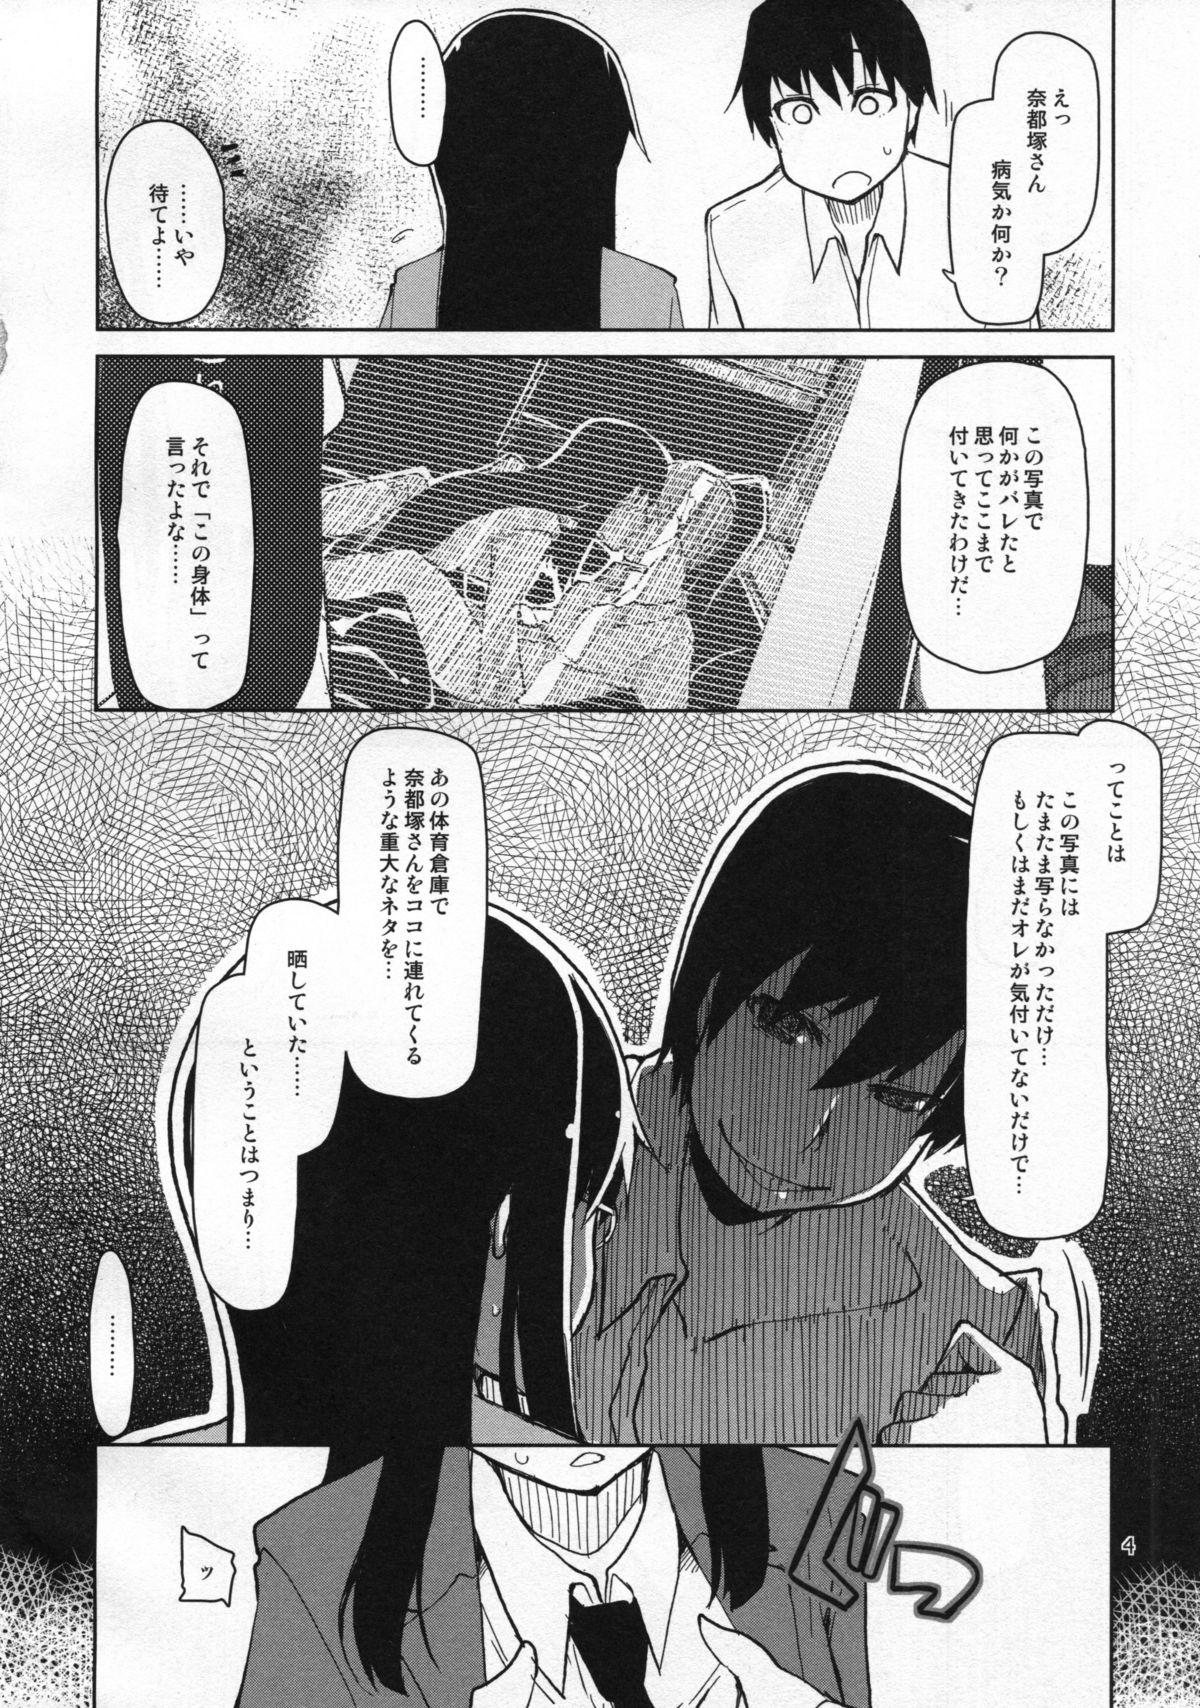 Spit Natsuzuka-san no Himitsu. Vol. 5 Doukoku Hen Defloration - Page 5